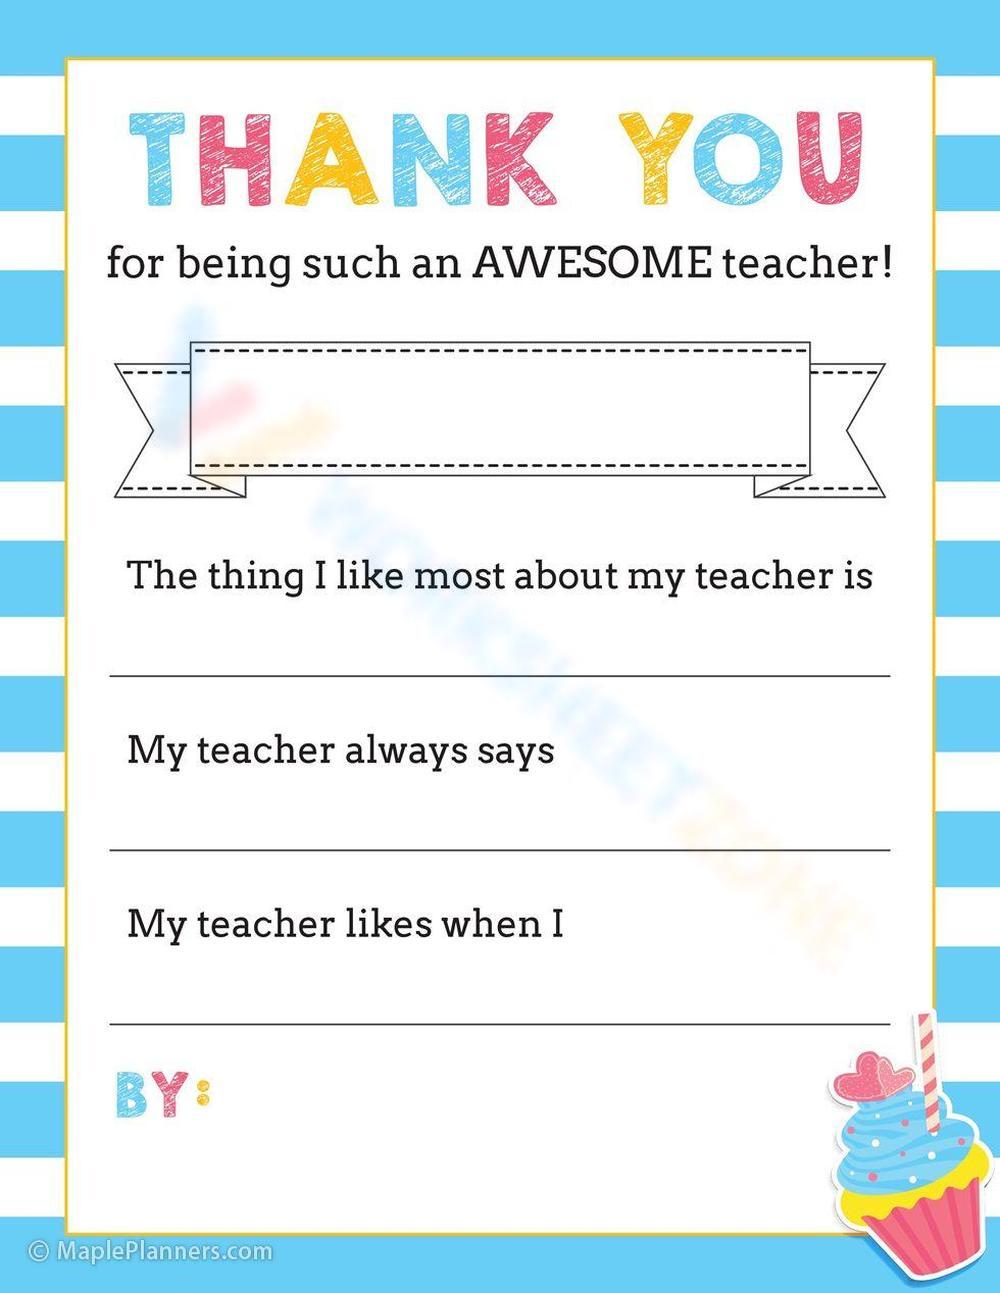 Awsome teacher